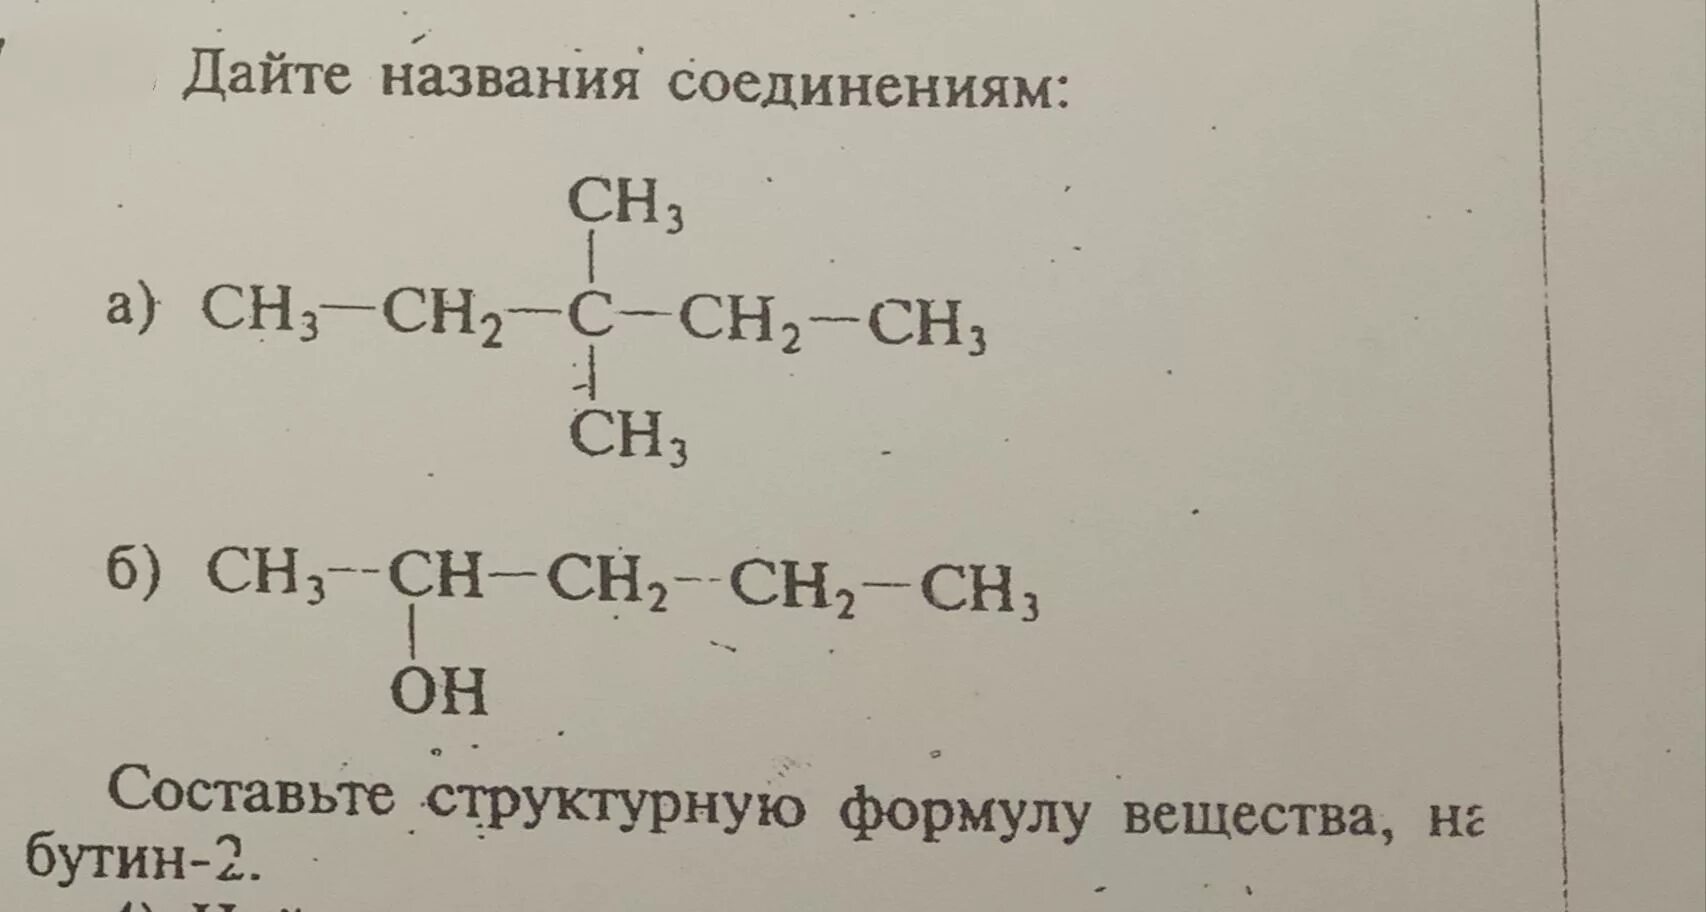 Структурные формулы ch3-c-ch2-ch2-ch3. Дайте название ch3-ch2-ch3. Назовите формулы веществ ch3-Ch-ch2-c-ch2. Назовите следующие соединения ch2(ch3)-c(ch3)--Ch ch3. Назовите следующие соединения а б